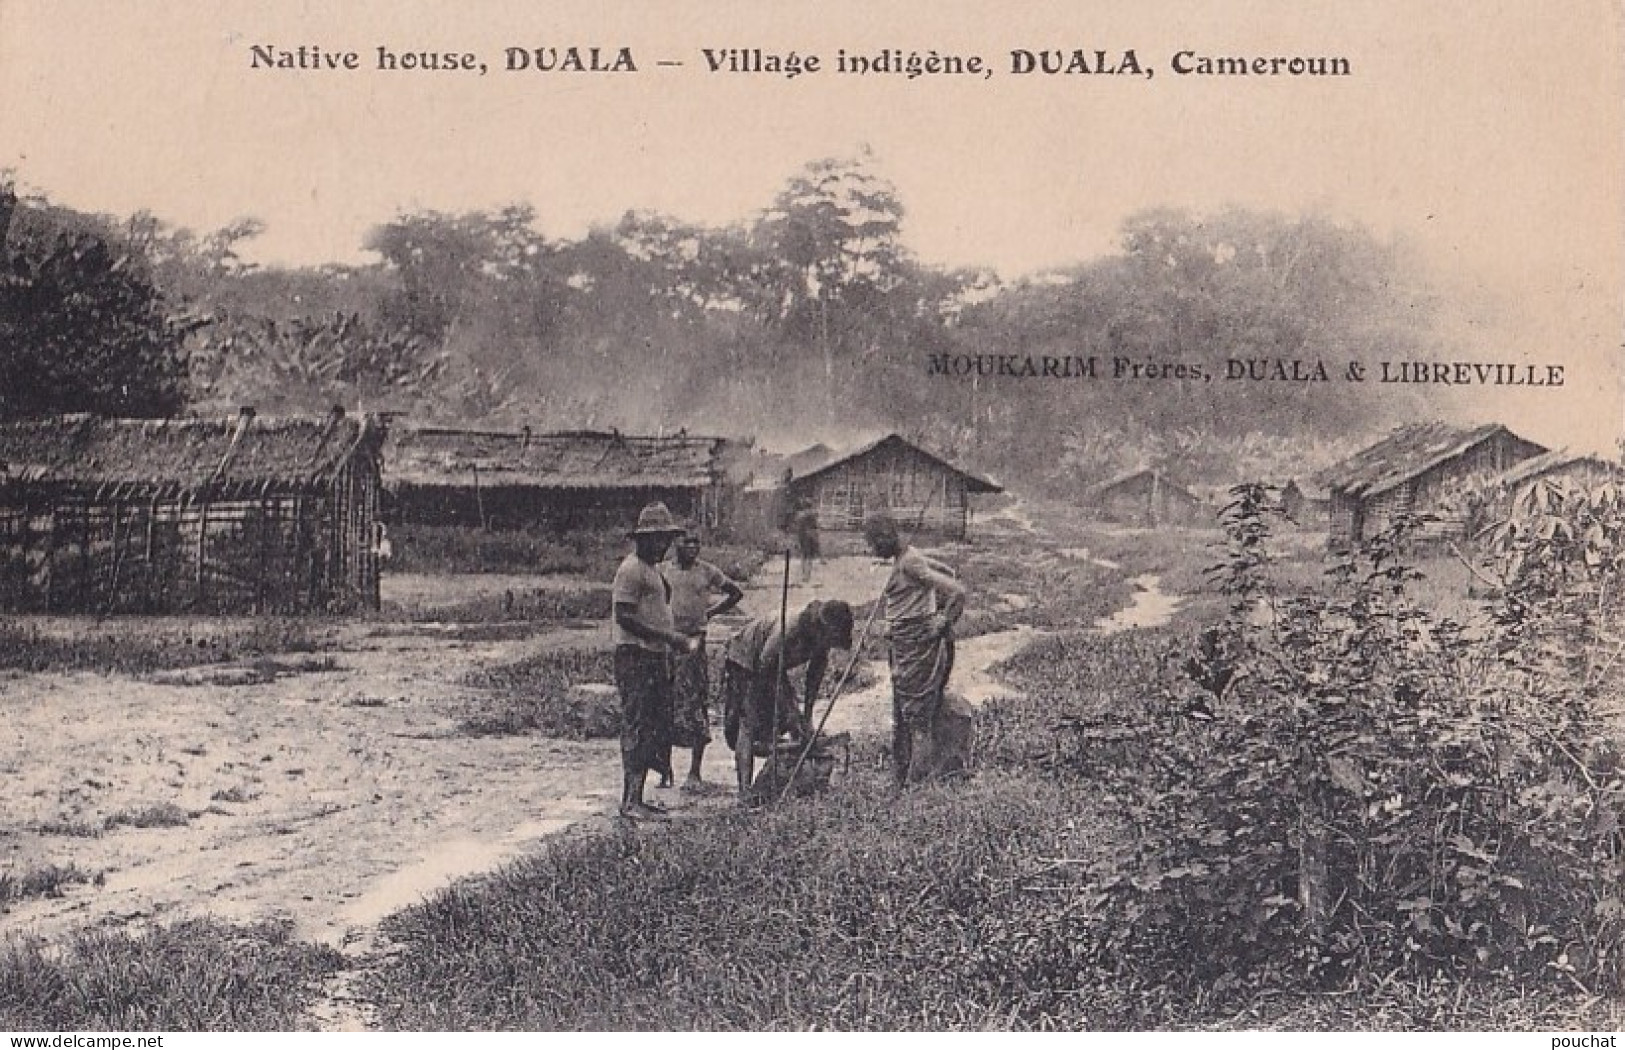  DUALA - VILLAGE INDIGENE - NATIVE HOUSE - MOUKARIM FRERES LIBREVILLE - CAMEROUN - EN  1918 - ( 2 SCANS ) - Cameroun